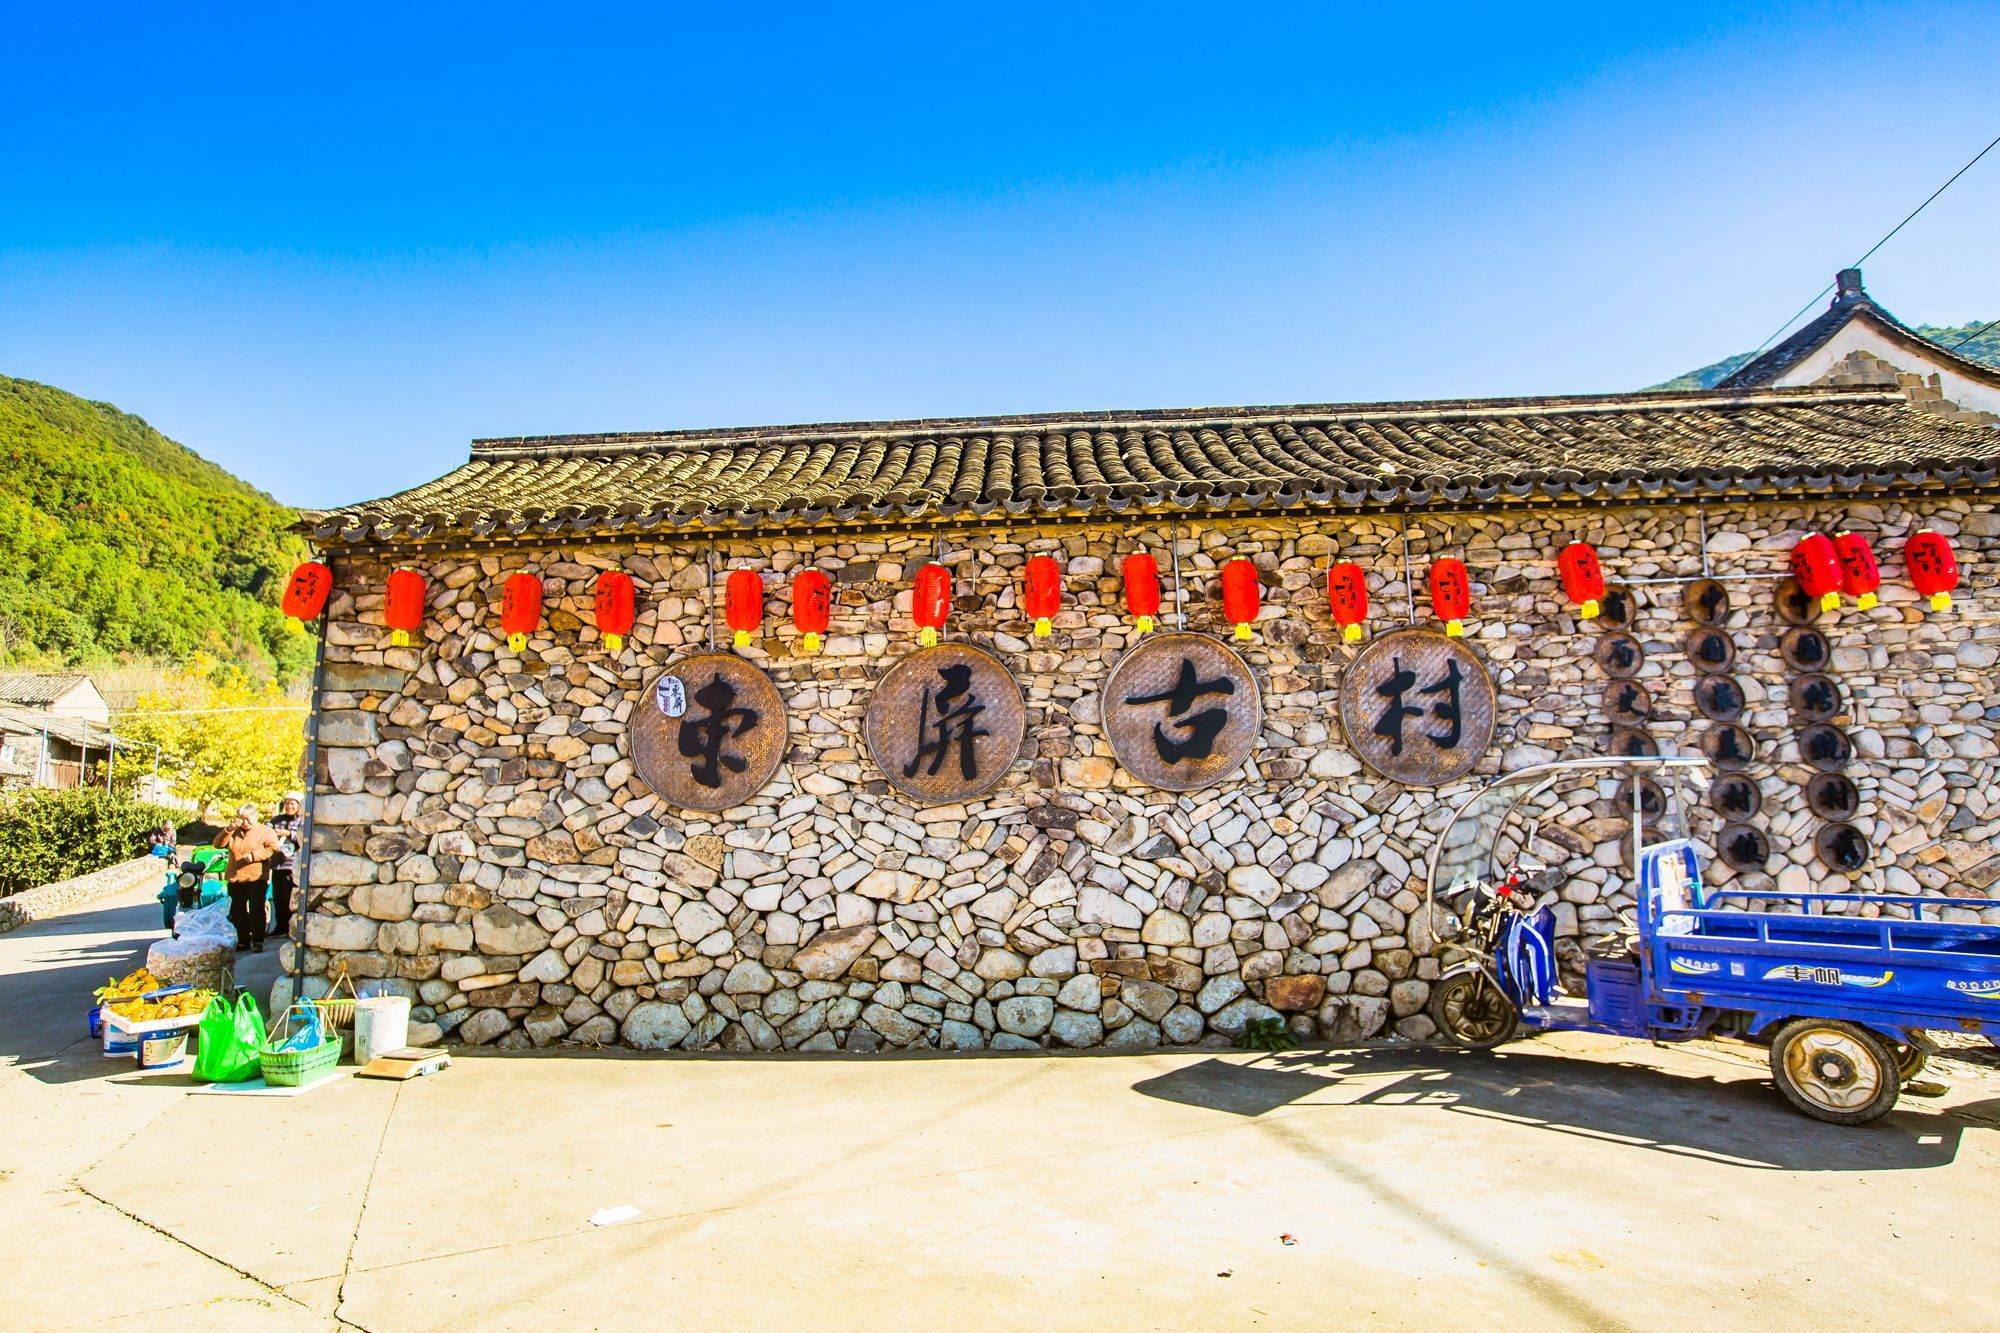 浙江三门东屏古村,历史悠久,风景秀美,带你走进中国画里的村庄